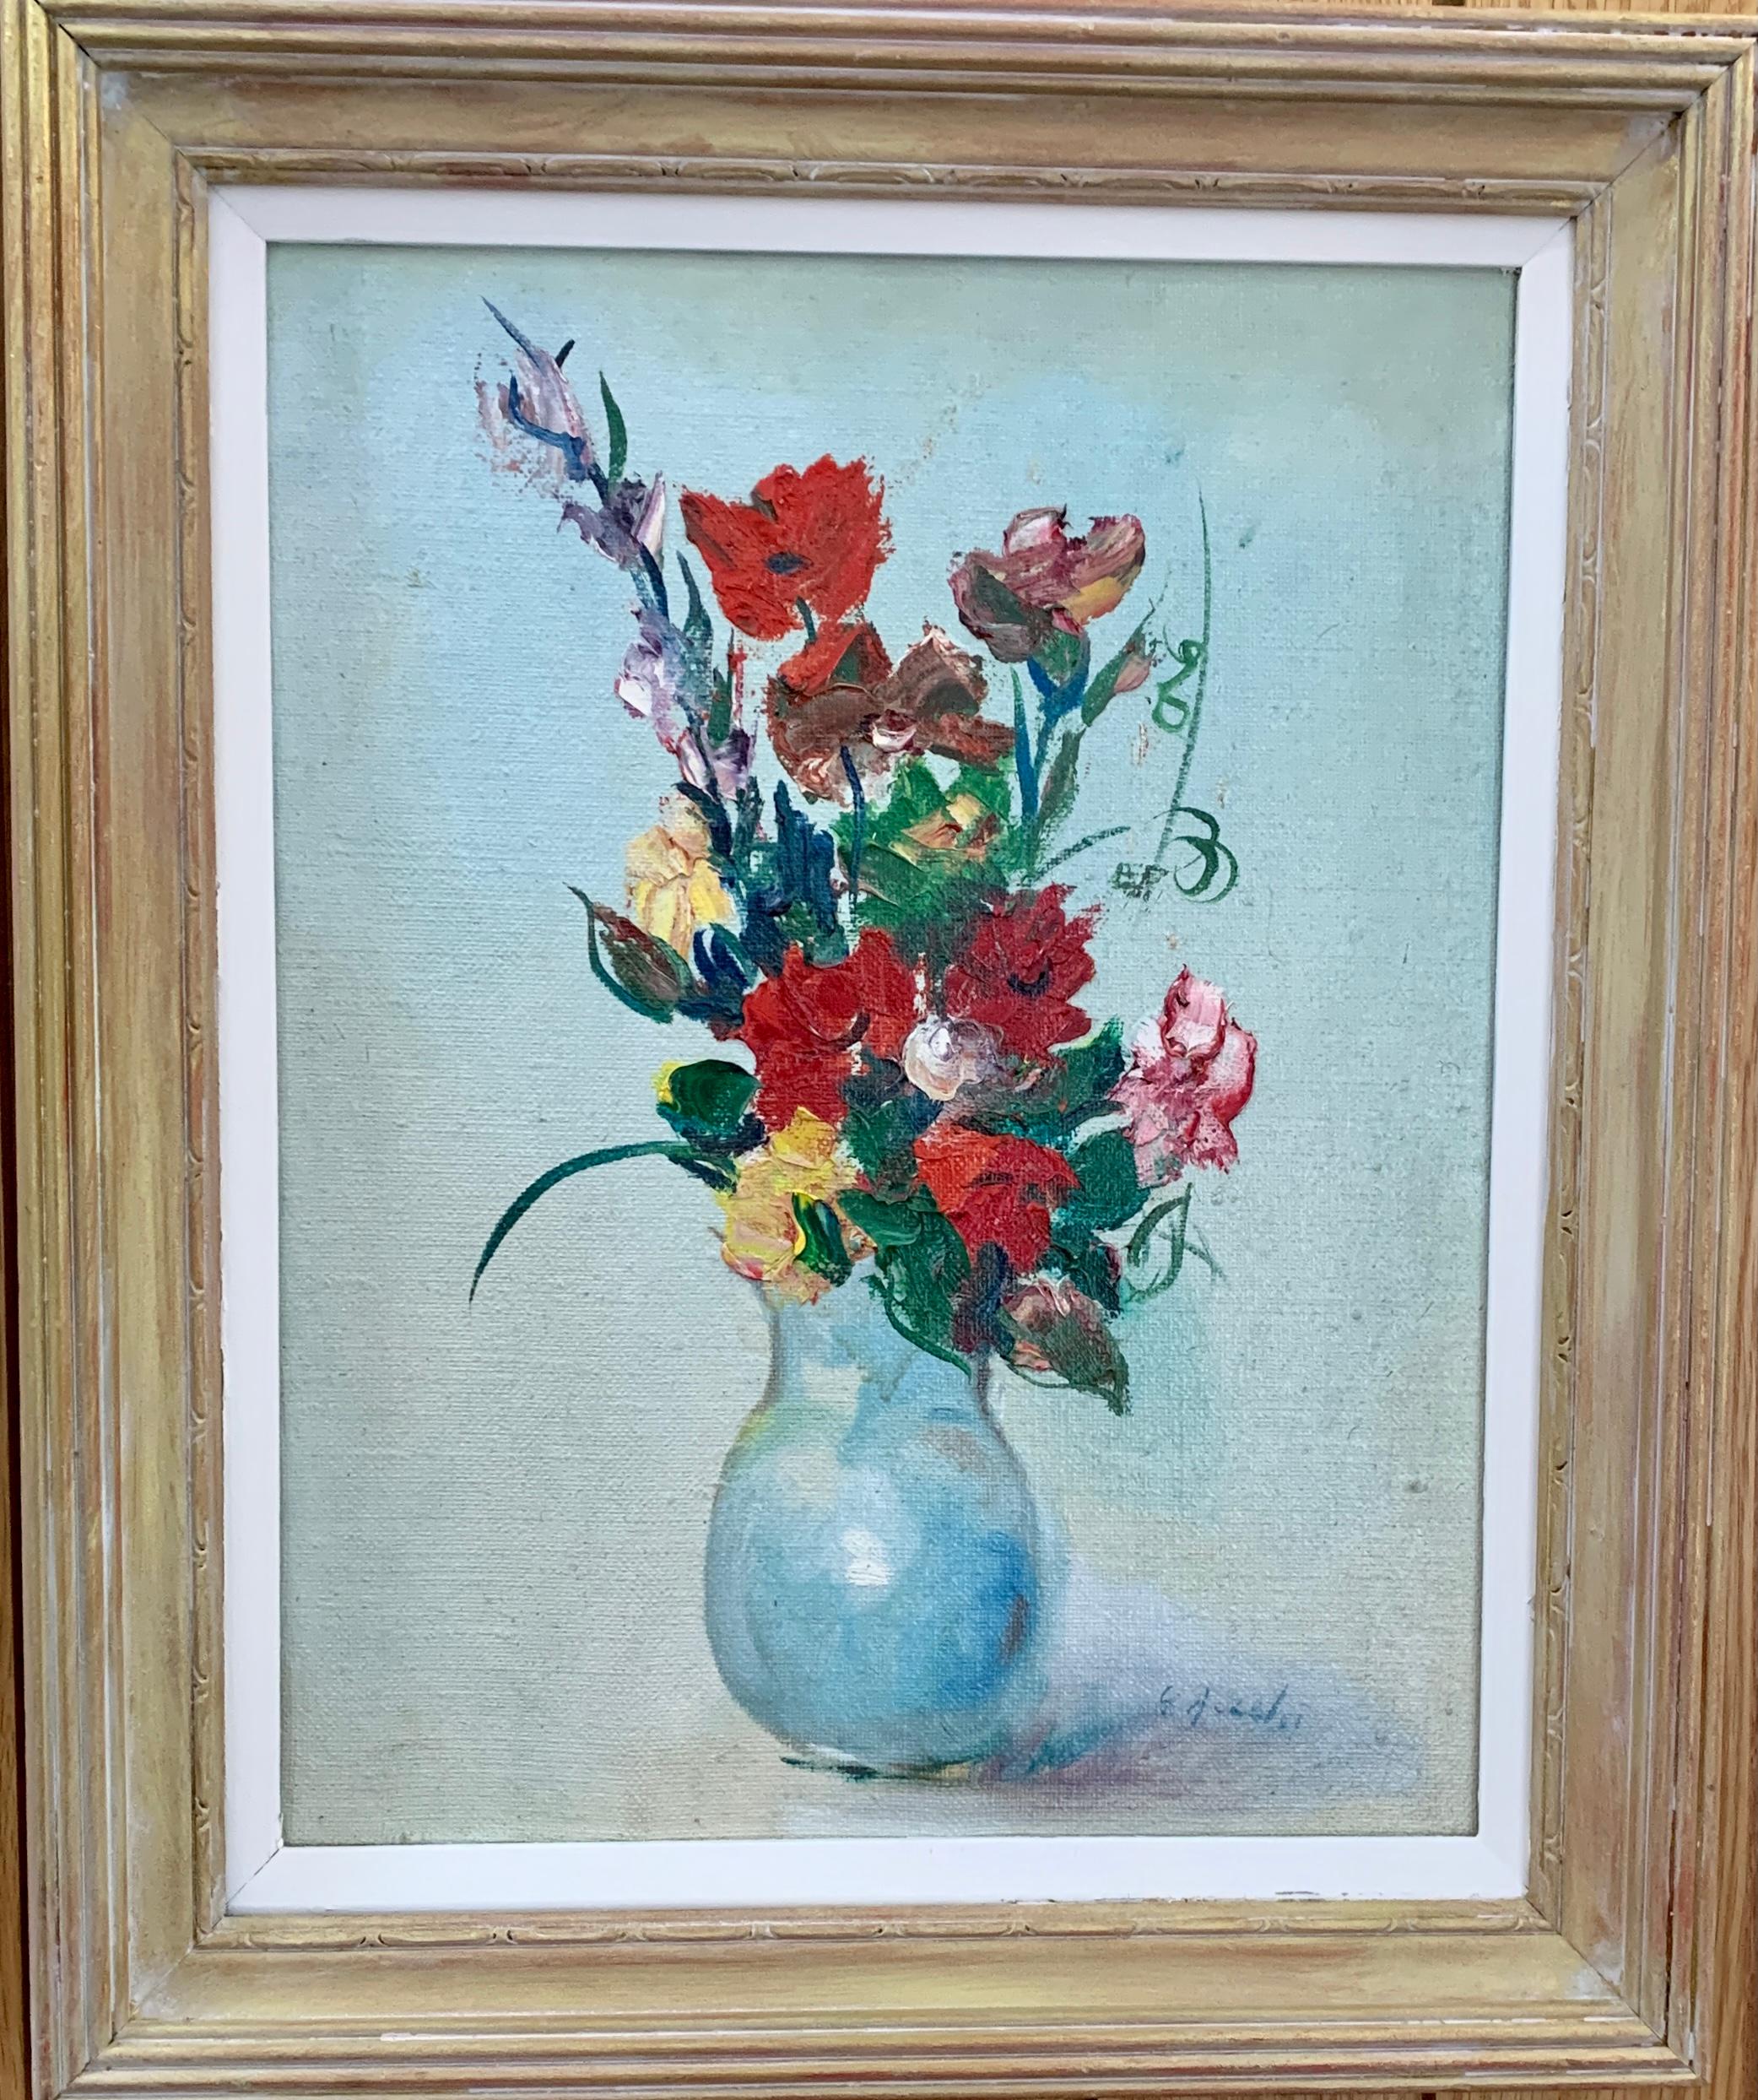 Nature morte impressionniste du milieu du 20e siècle représentant des fleurs dans un vase, avec des coquelicots